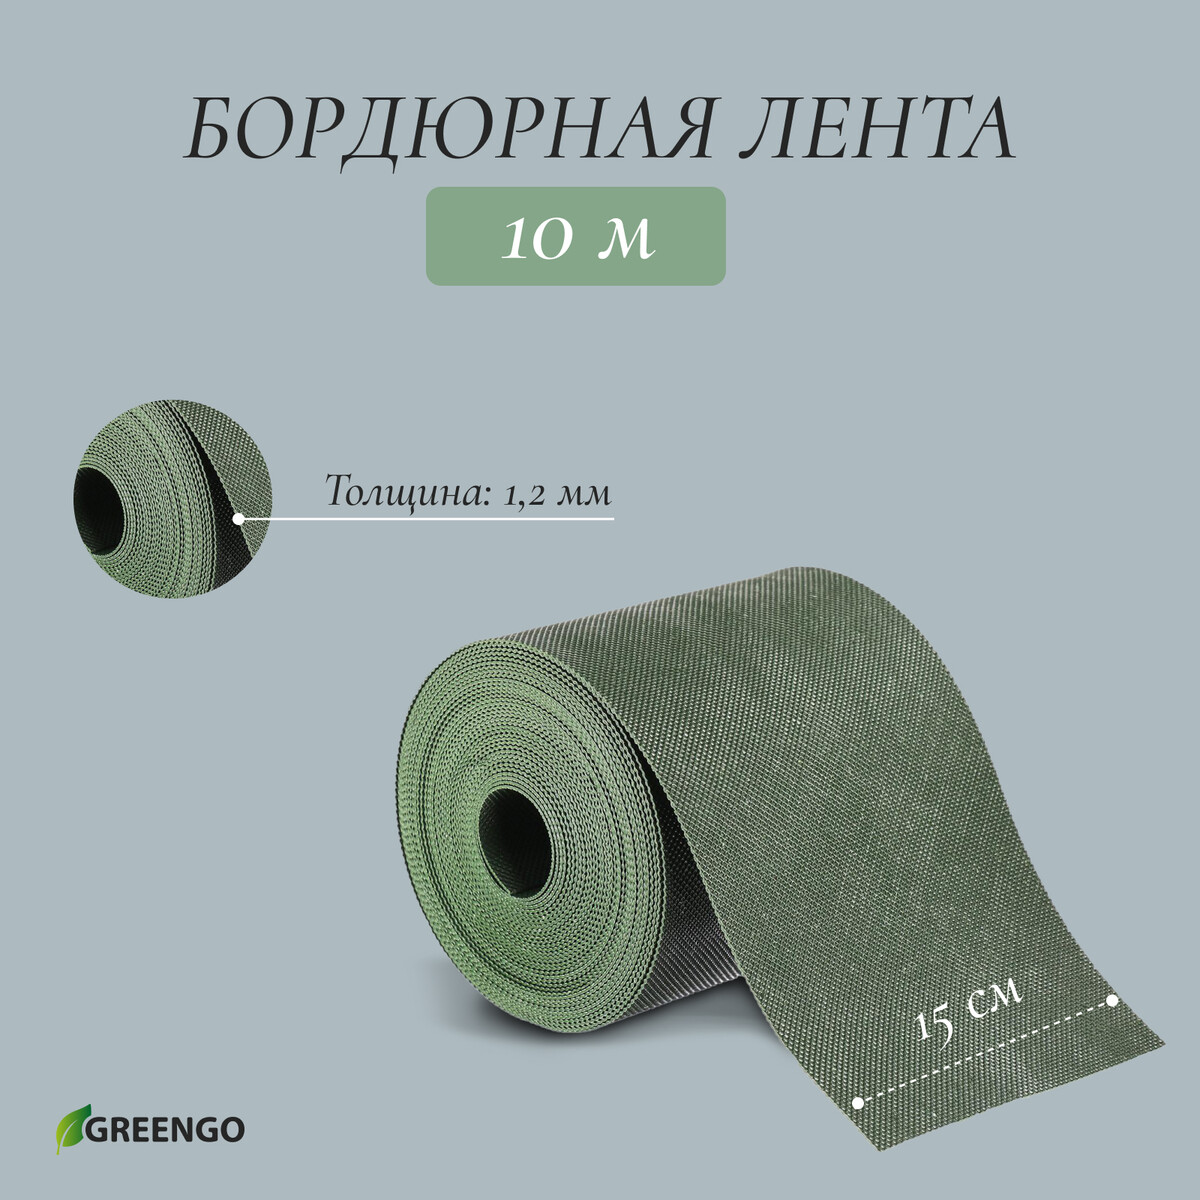 Лента бордюрная, 0.15 × 10 м, толщина 1.2 мм, пластиковая, зеленая, greengo лента бордюрная 0 15 × 9 м толщина 1 2 мм пластиковая фигурная коричневая